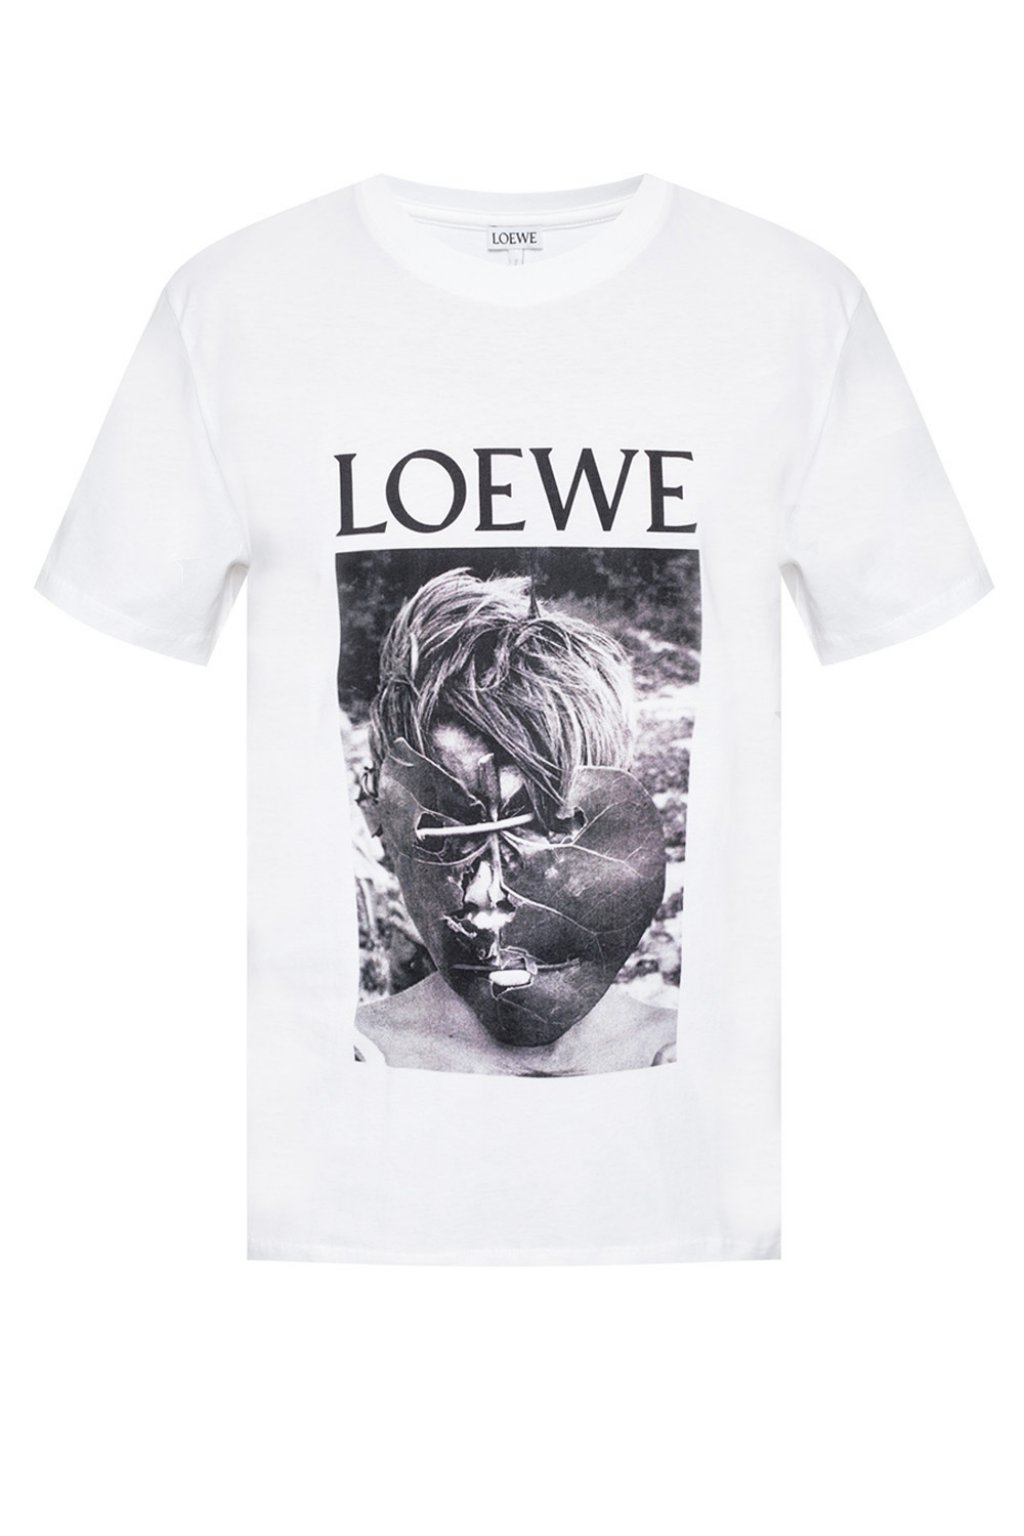 Loewe Logo-printed T-shirt | Men's Clothing | Vitkac